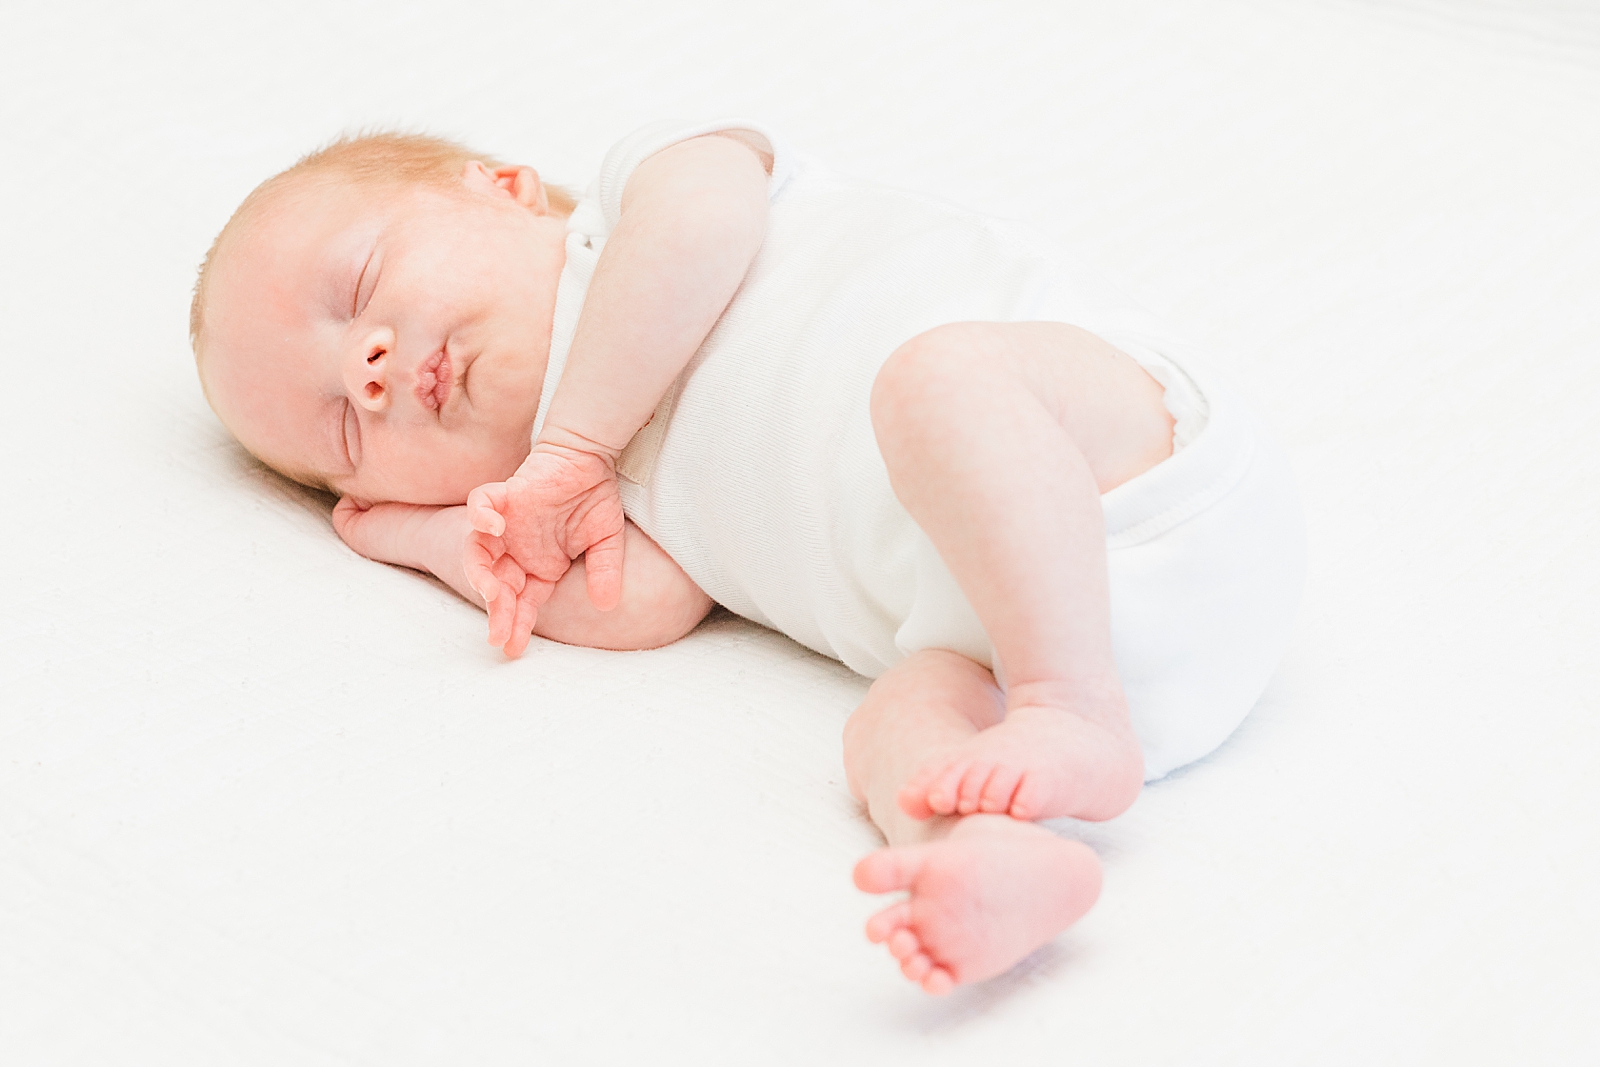 newborn baby in white onesie asleep on the bed during lifestyle newborn photos